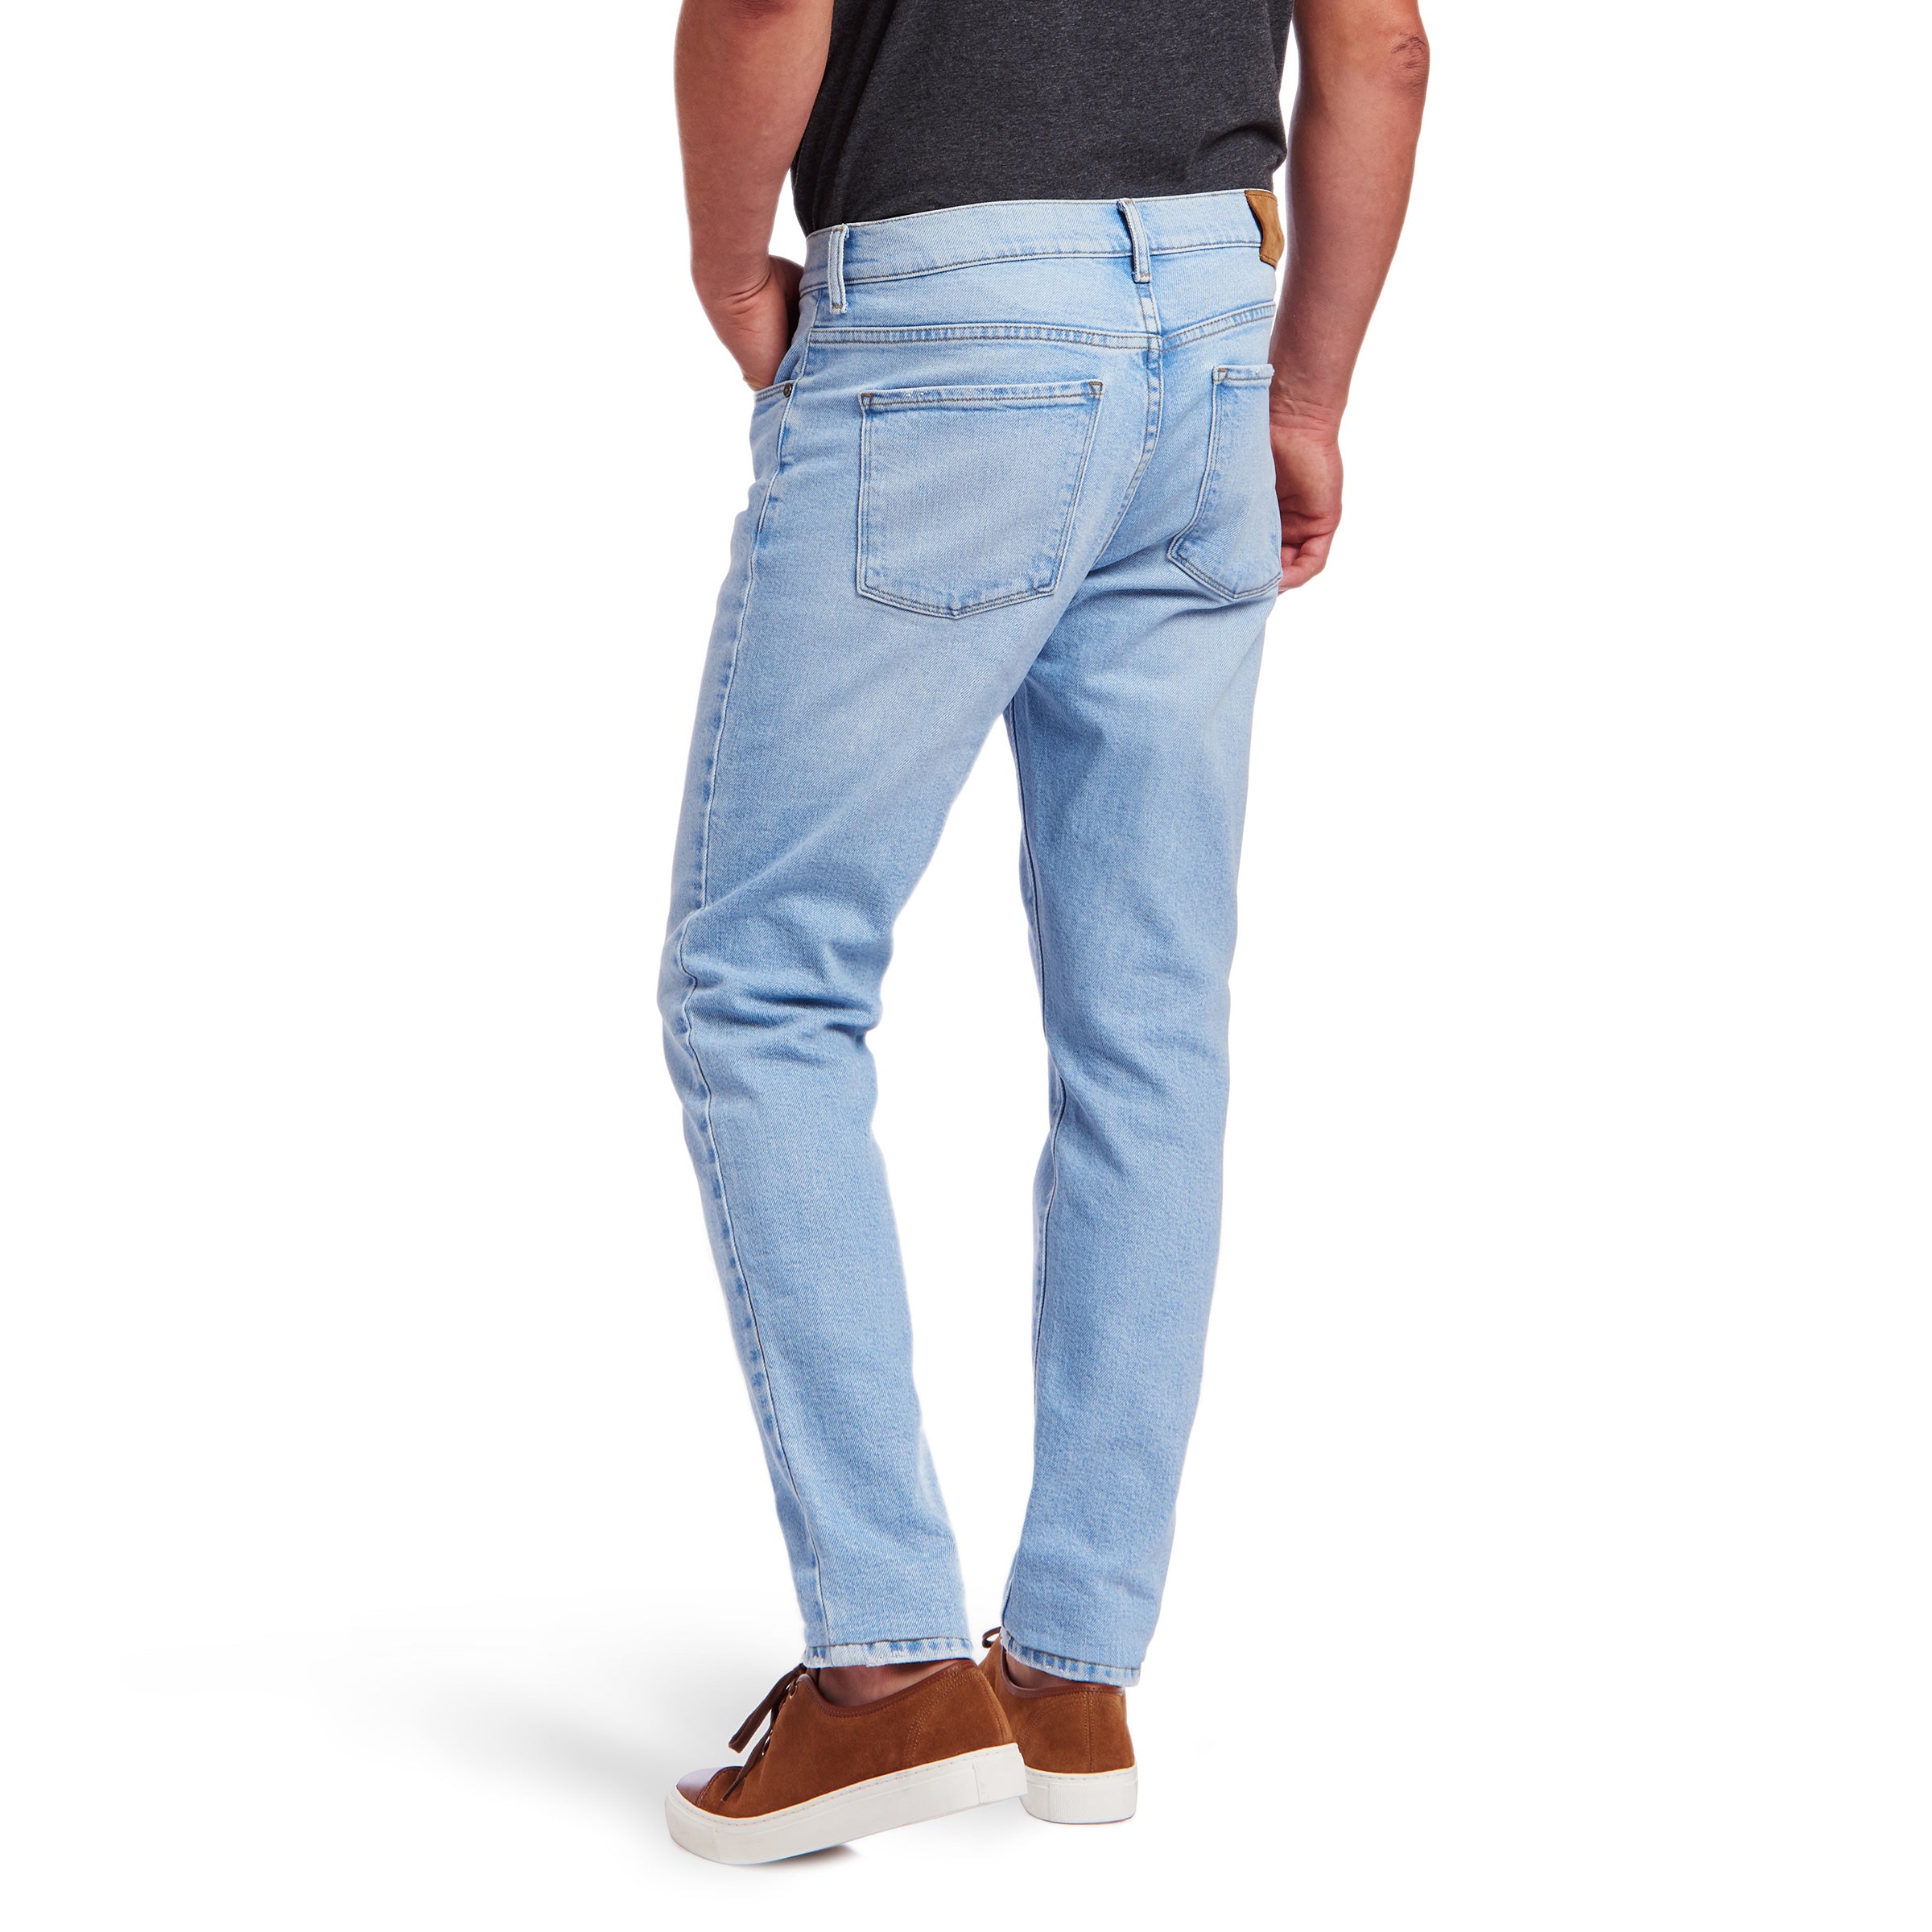 Men wearing Azul claro Slim Hubert Jeans